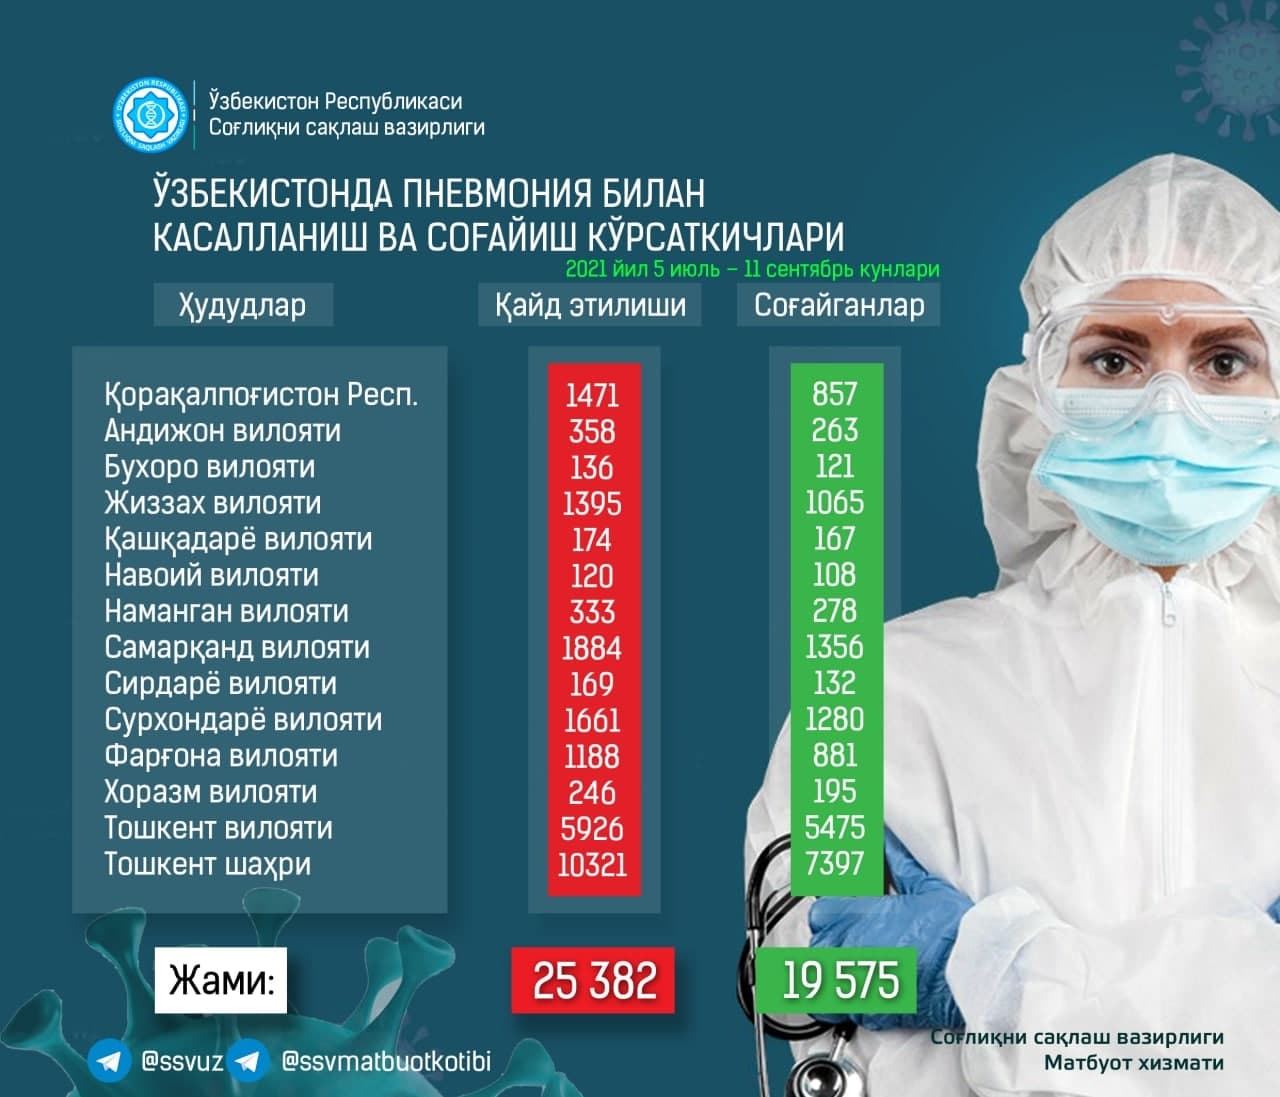 Опубликована новая статистика по пневмонии в Узбекистане